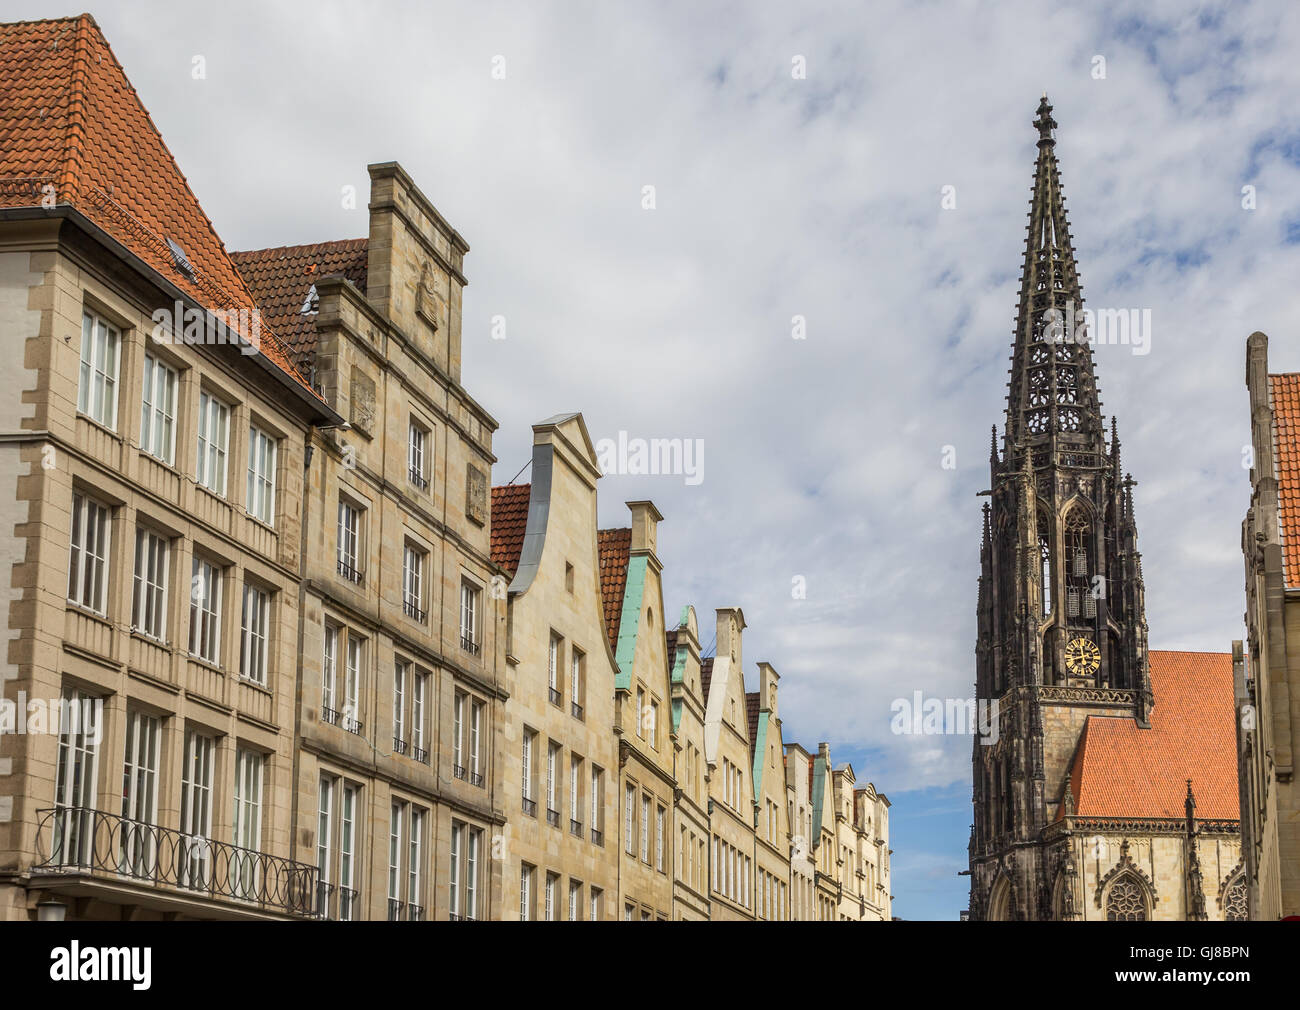 Façades et clocher de l'église à la principale place du marché à Munster, Allemagne Banque D'Images